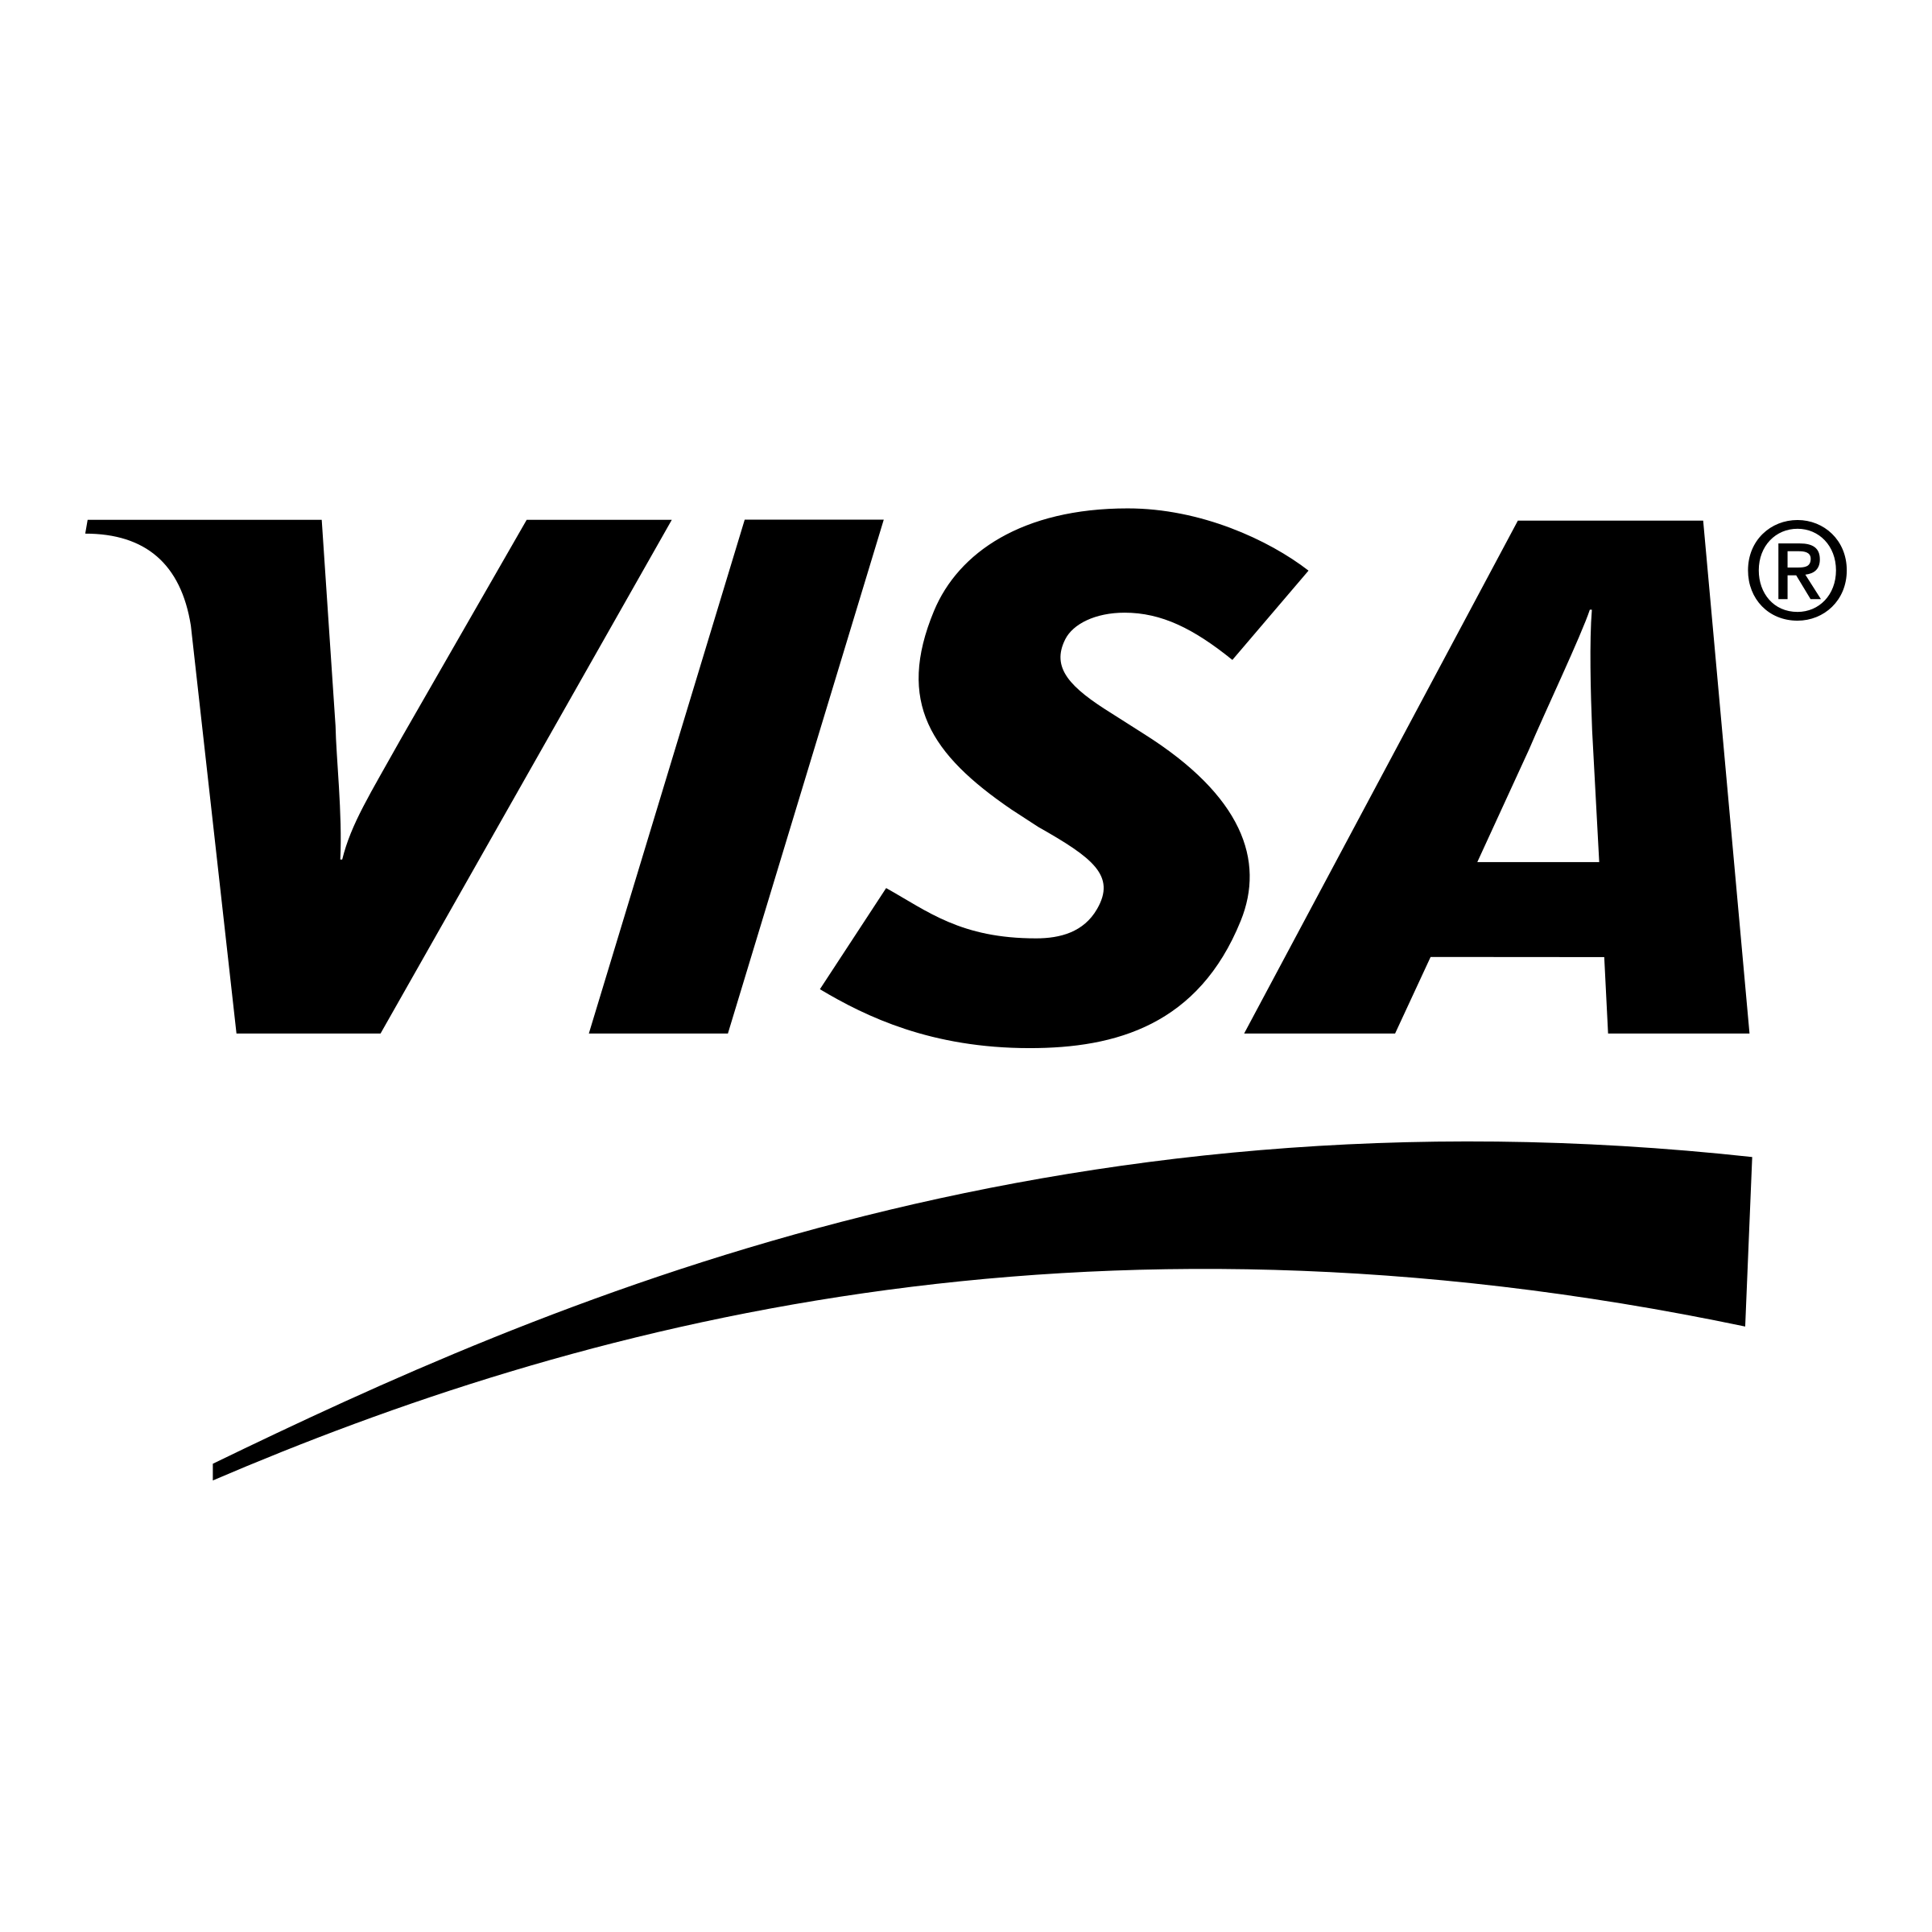 White Visa Logo - VISA Logo PNG Transparent & SVG Vector